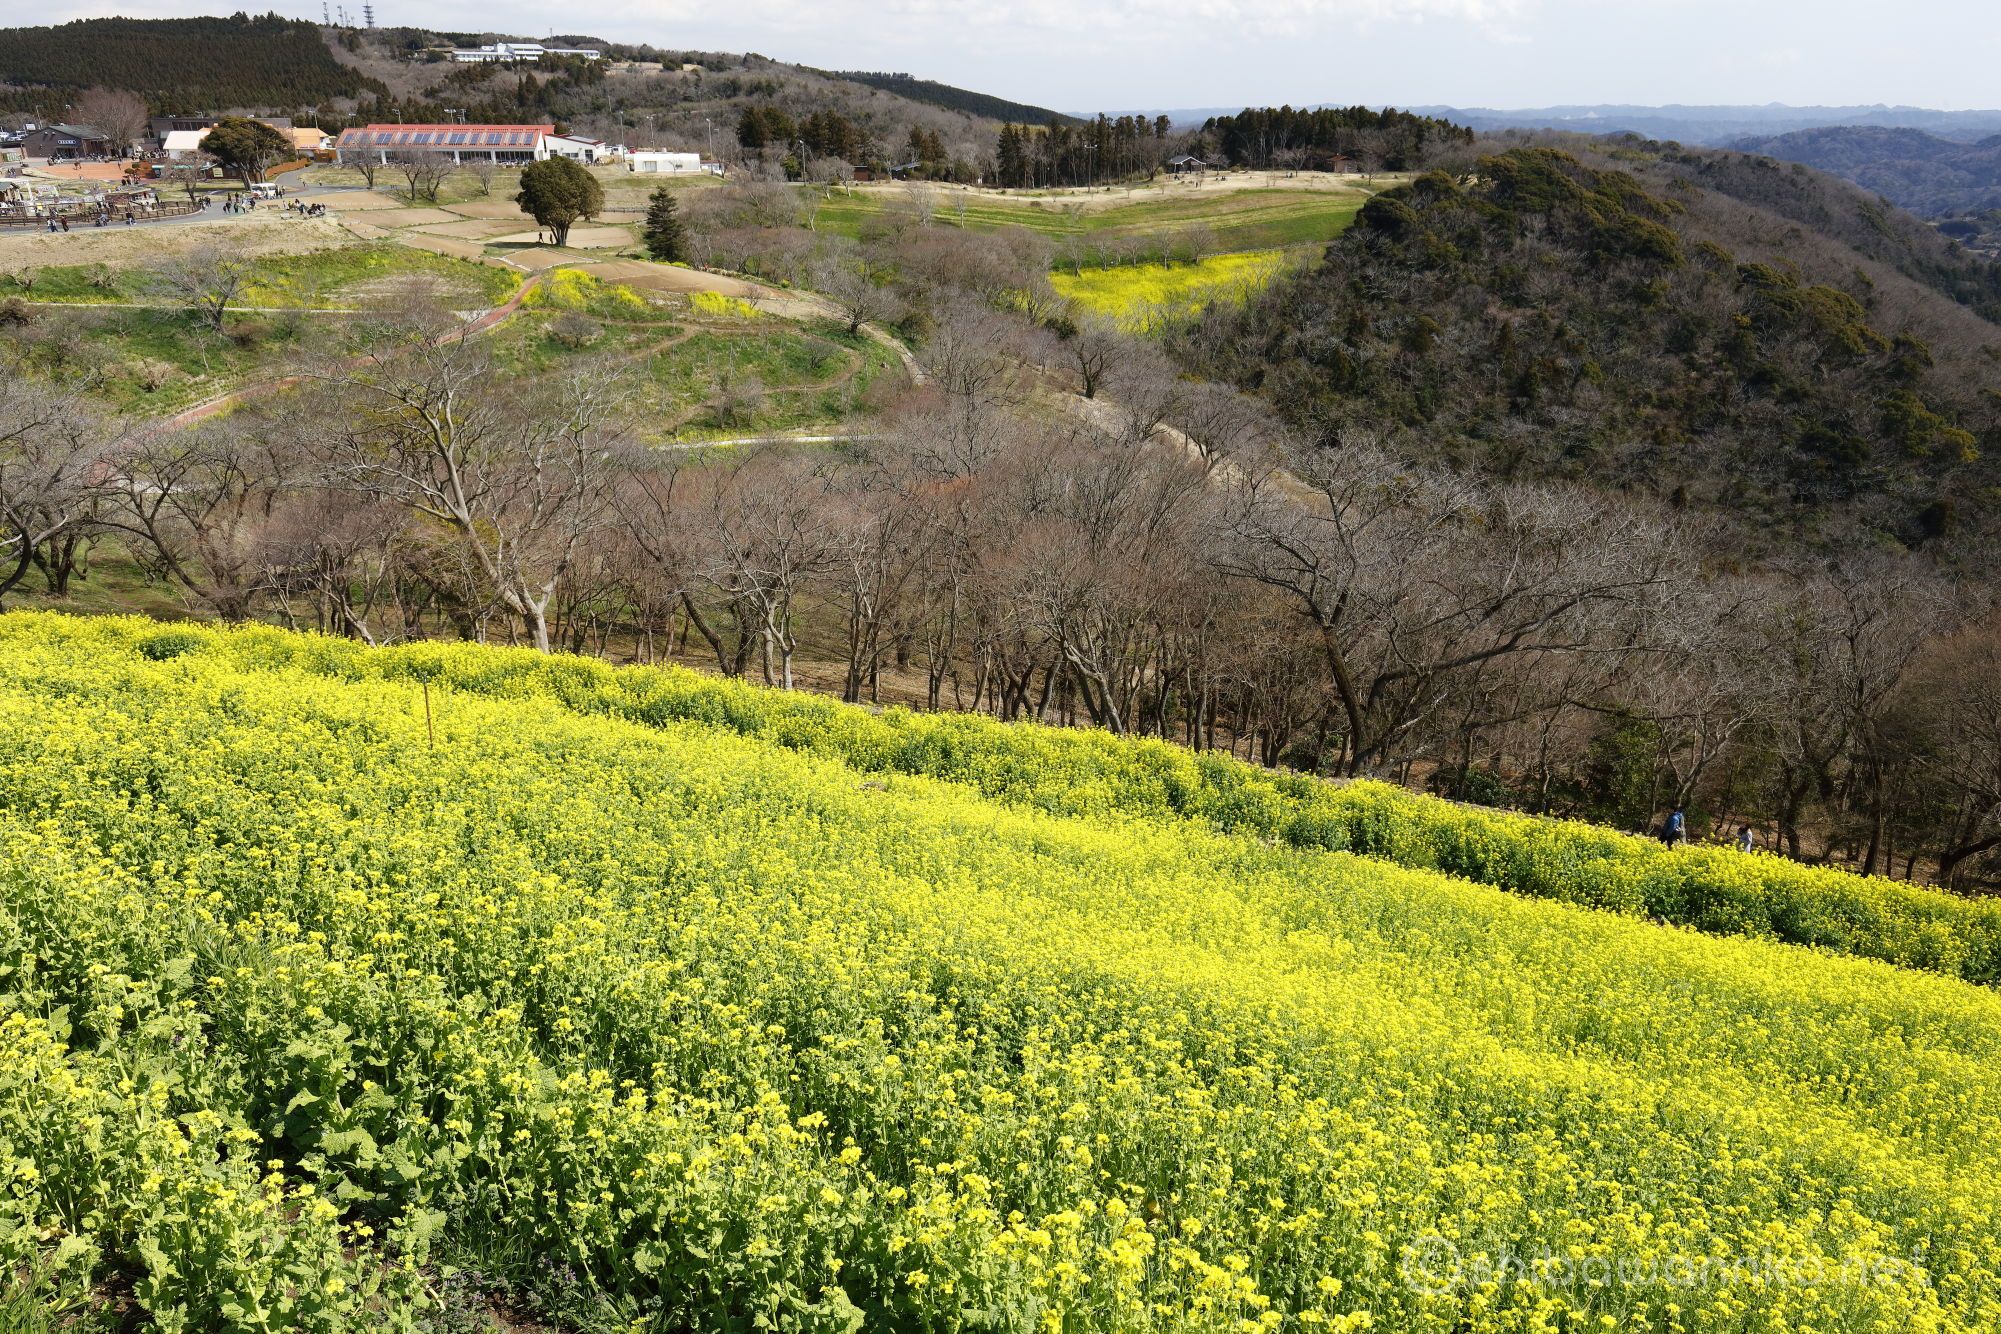 マザー牧場 満開見頃の菜の花畑を求めて千葉県へ Shibawannkoの撮影山行